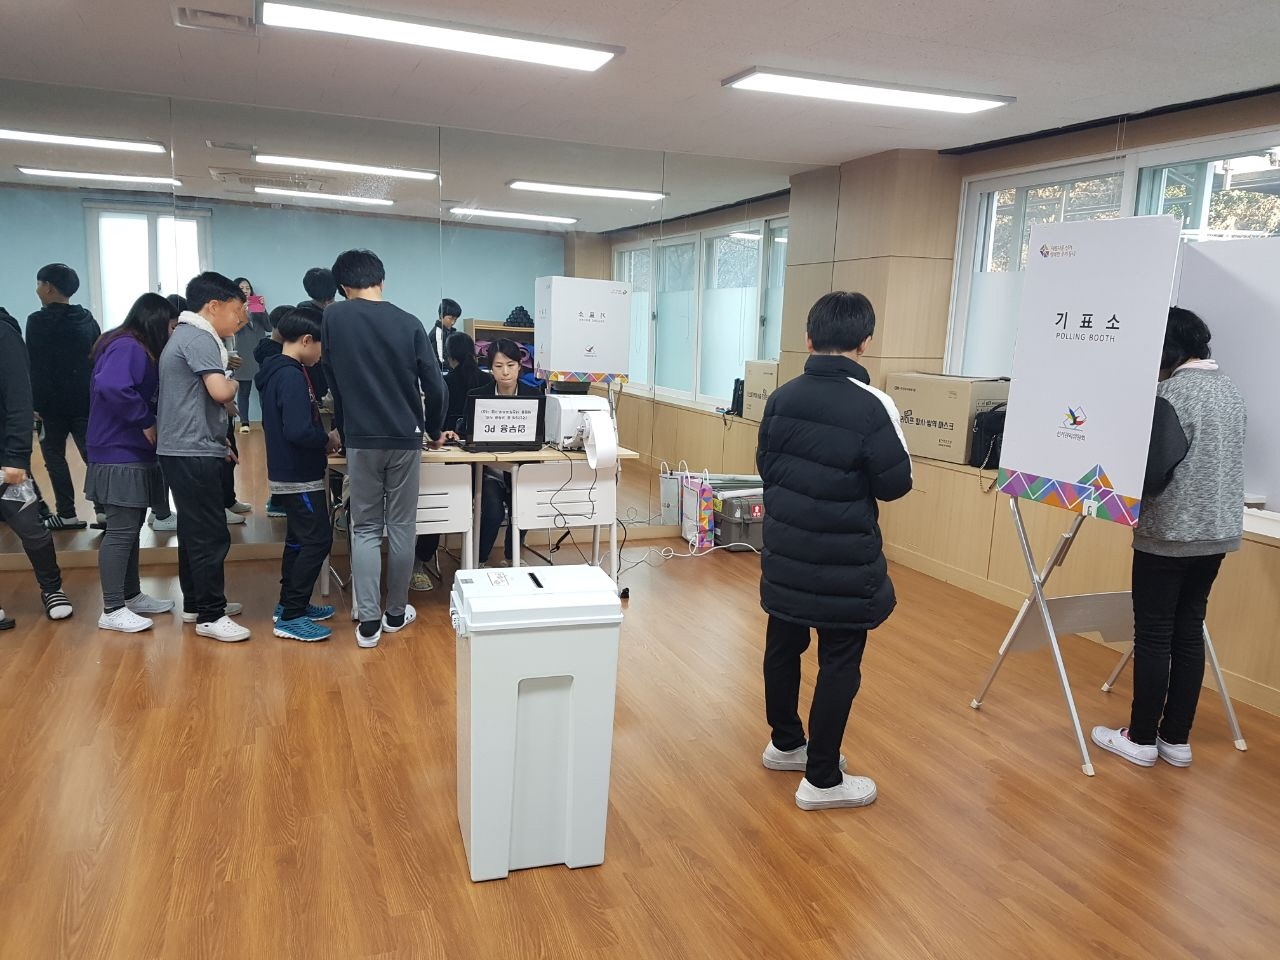 서울시립수서청소년수련관 학생들이 사전투표체험을 위해 줄을 서서 투표용지를 수령하고 기표소에서 기표하고 있는 모습 